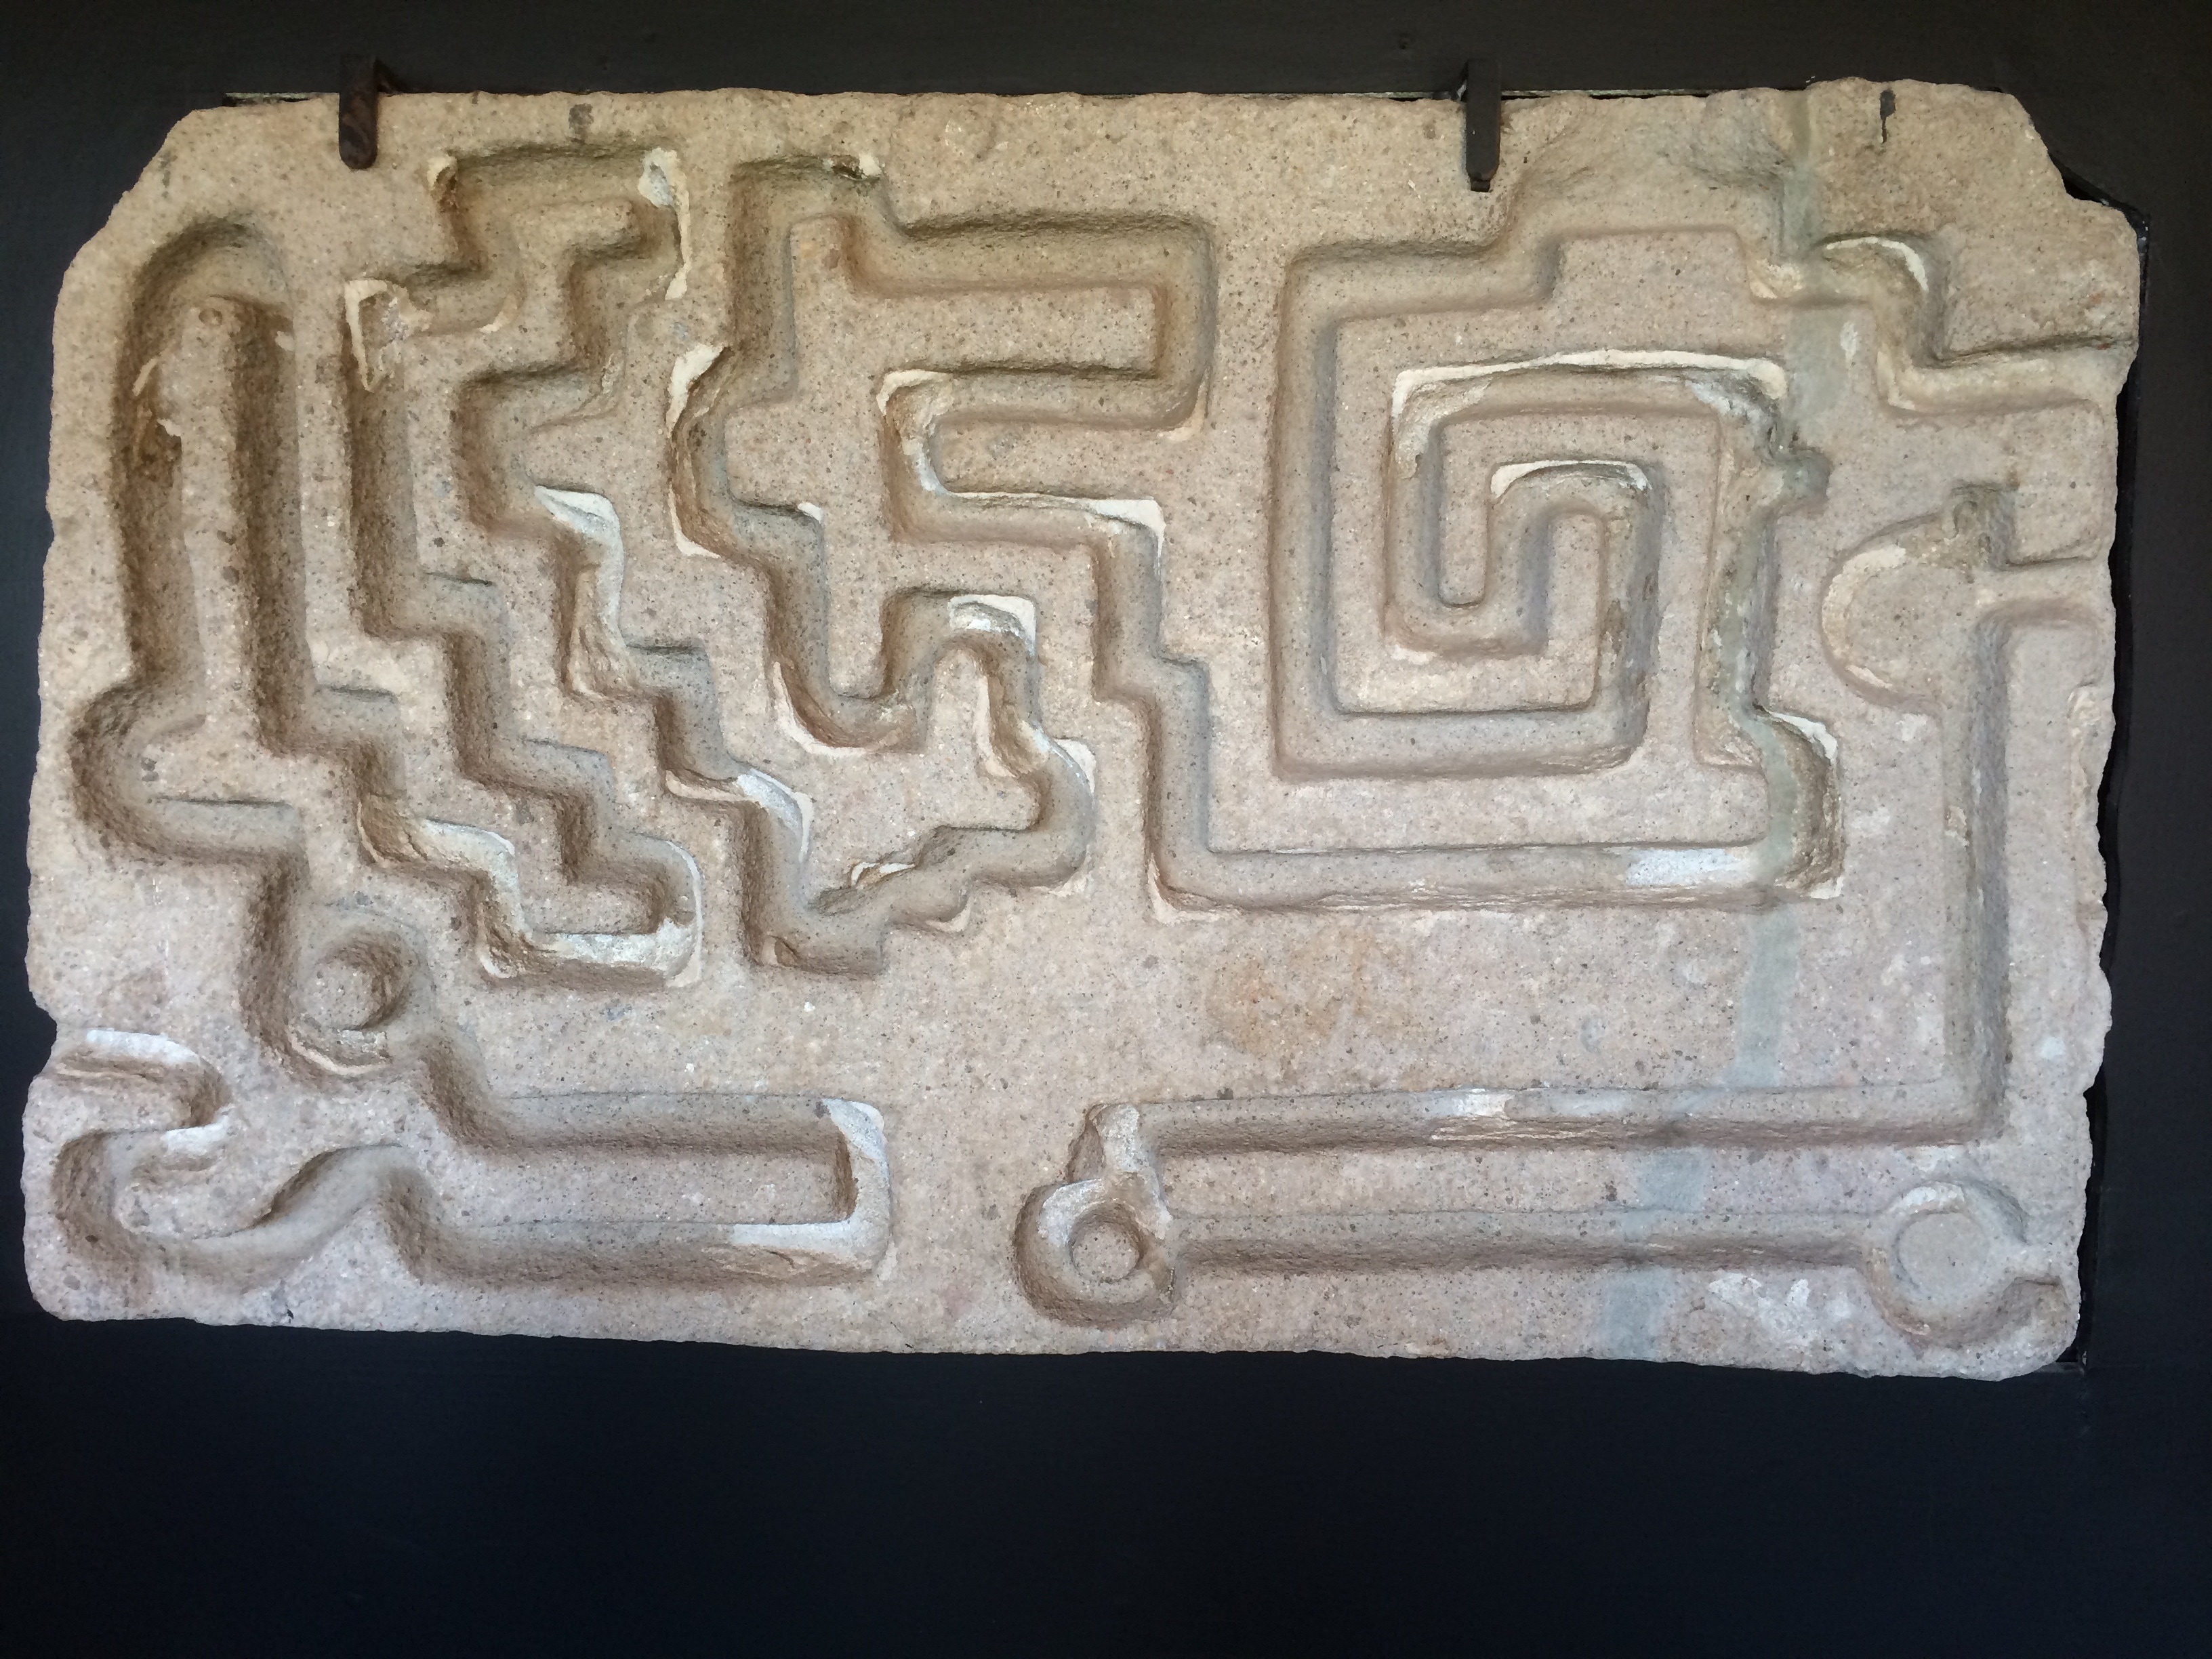 gray rectangular stone maze board